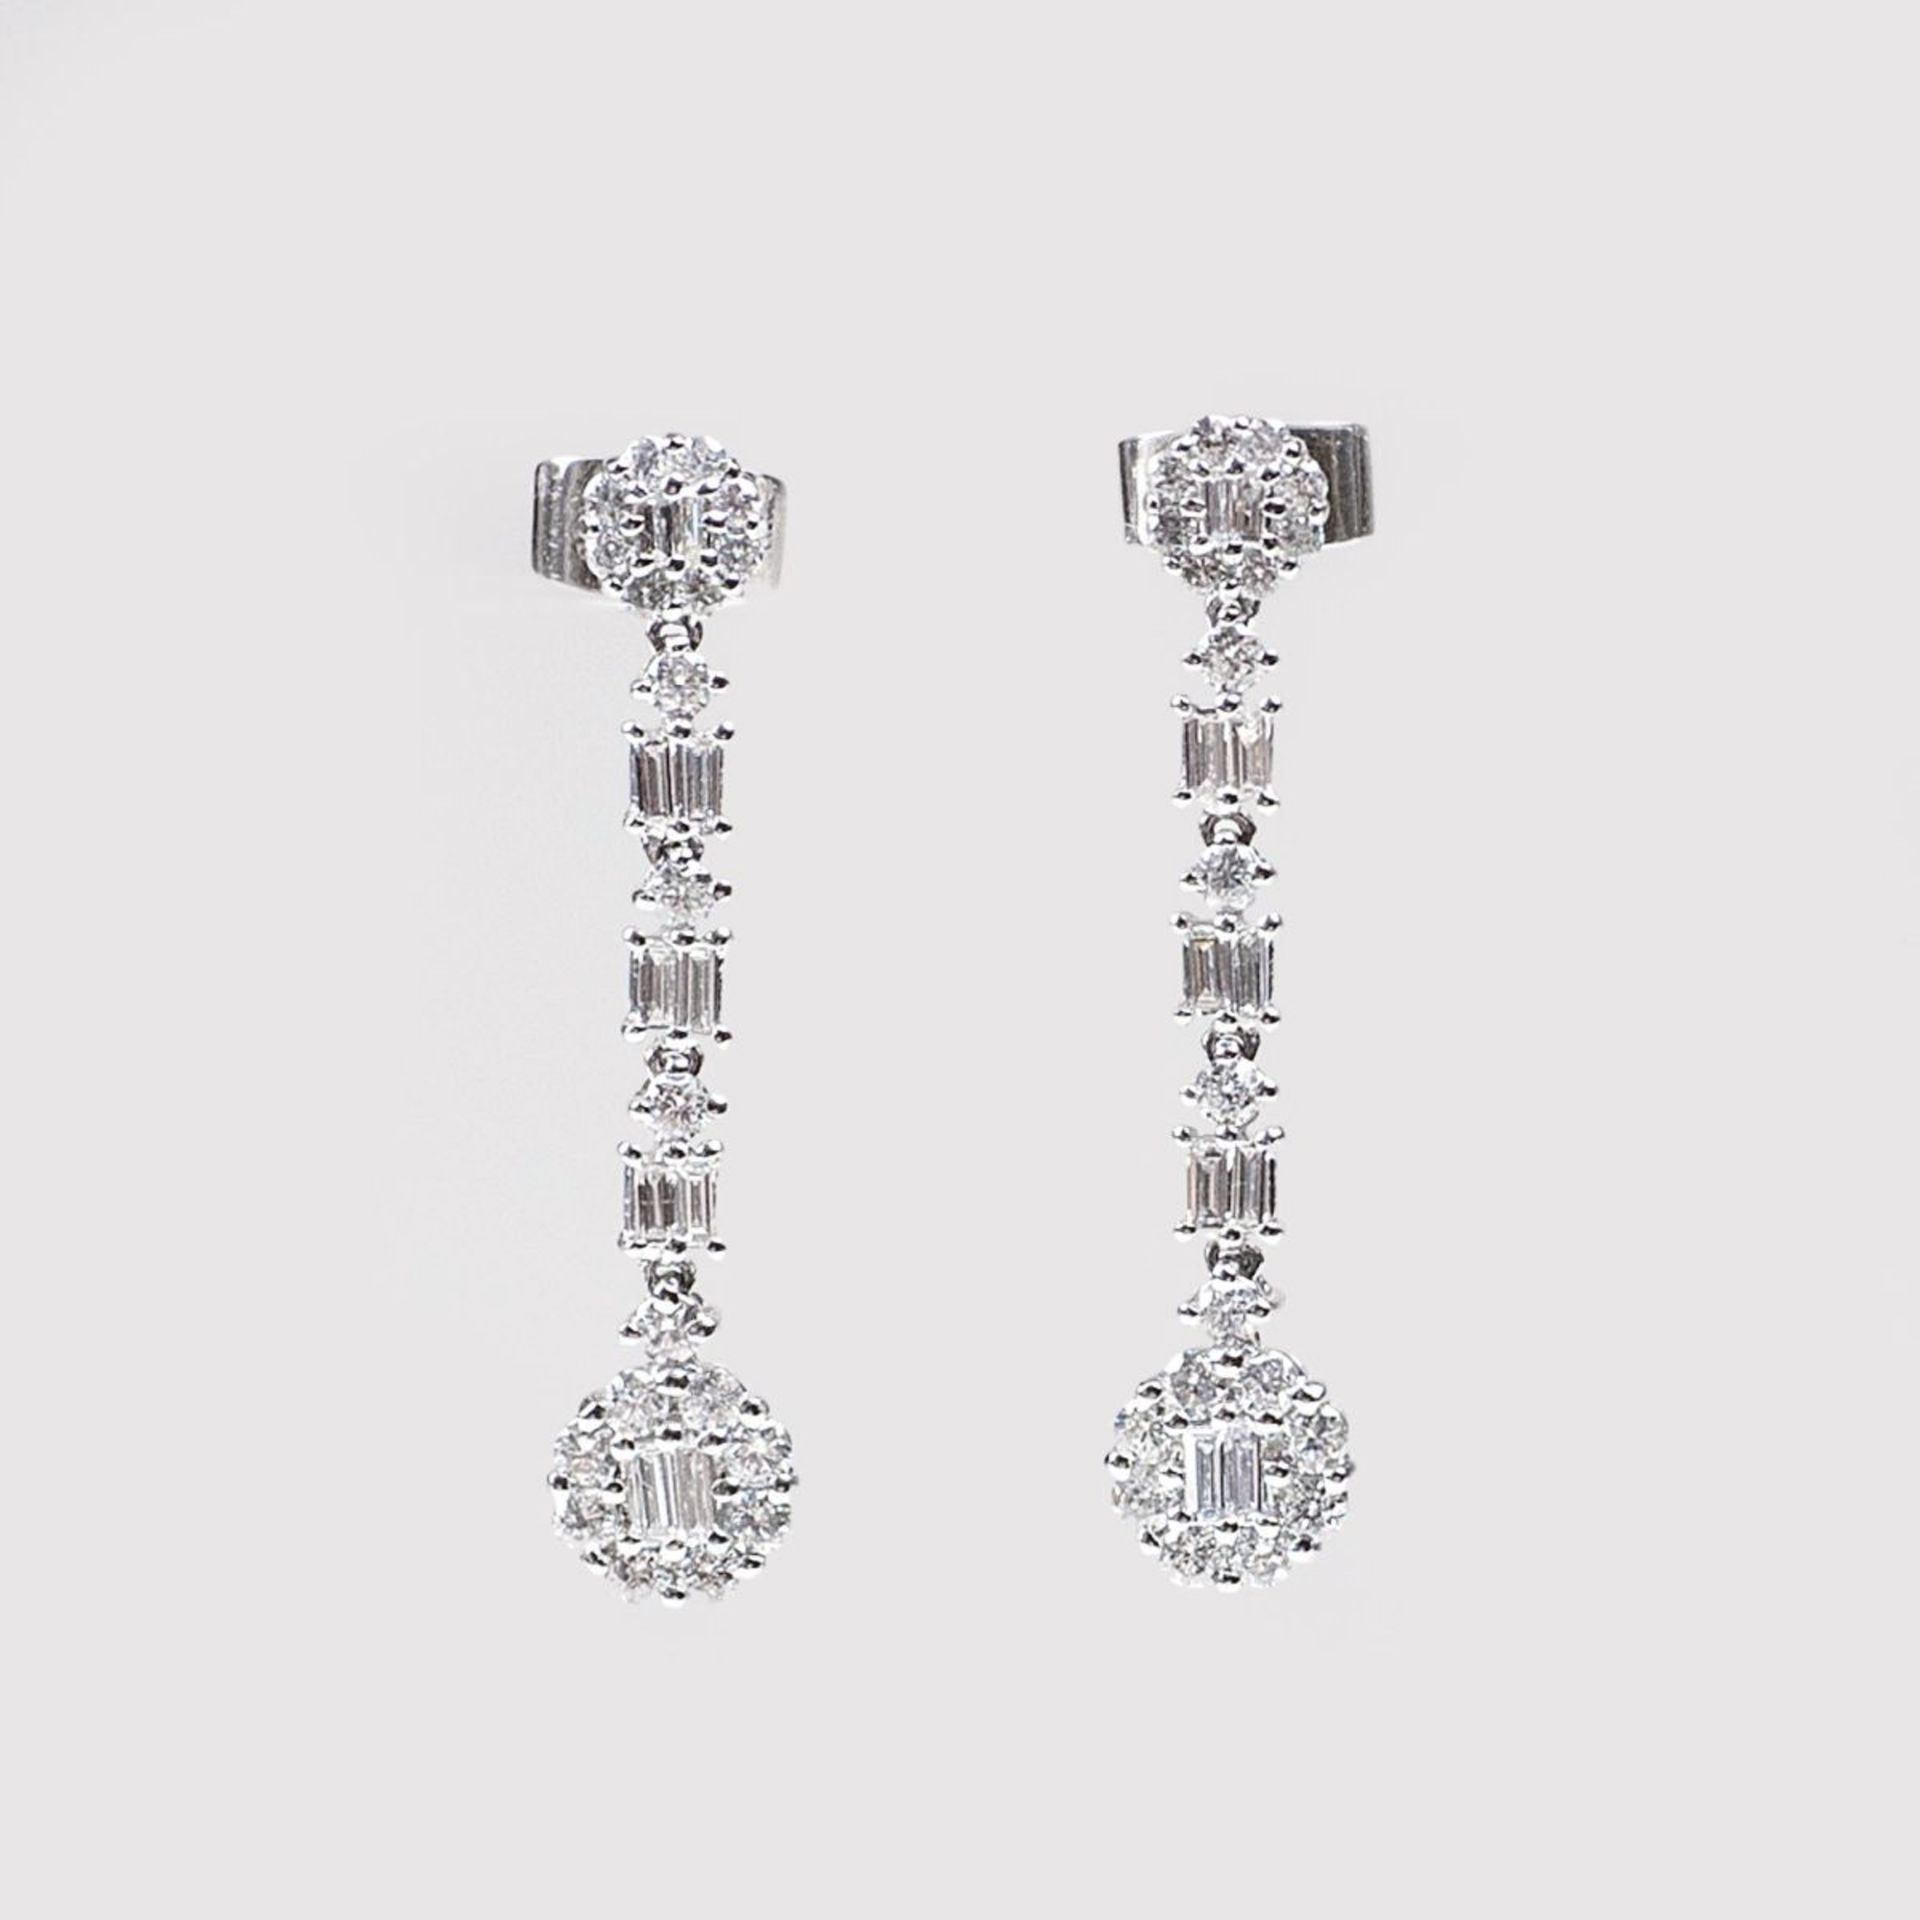 Paar Diamant-Brillant-Ohrringe18 kt. WG. Stecker-Brisur und Steg mit insges. 20 Baguette-Diam. und